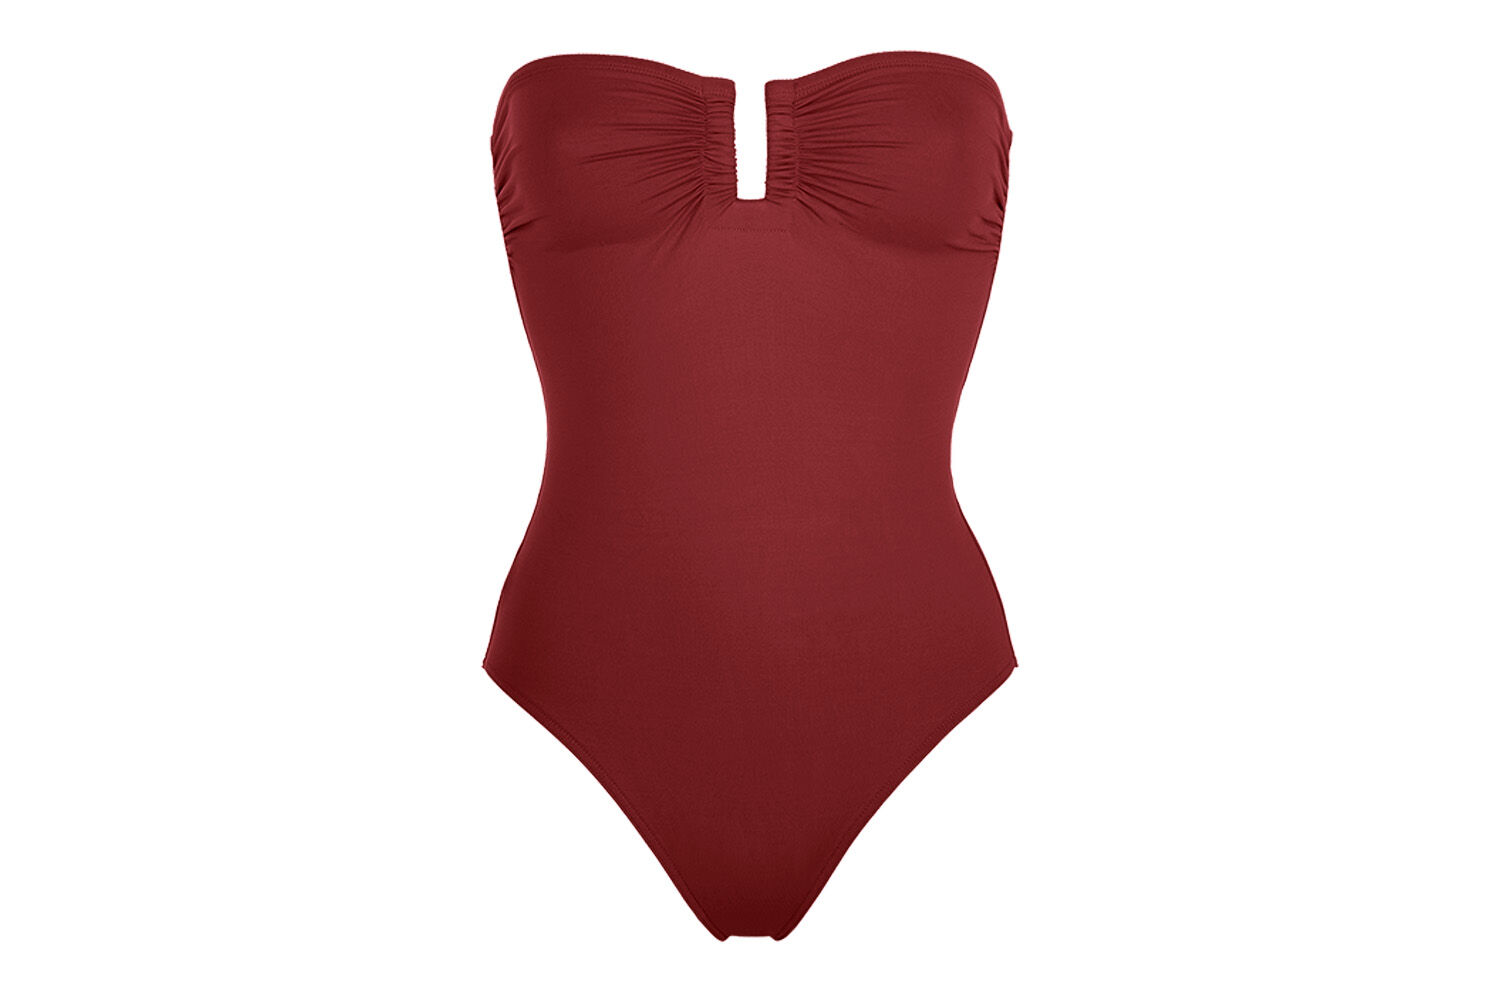 Damen Bekleidung Bademode und Strandmode Monokinis und Badeanzüge Eres Badenanzug cassiopee in Rot 